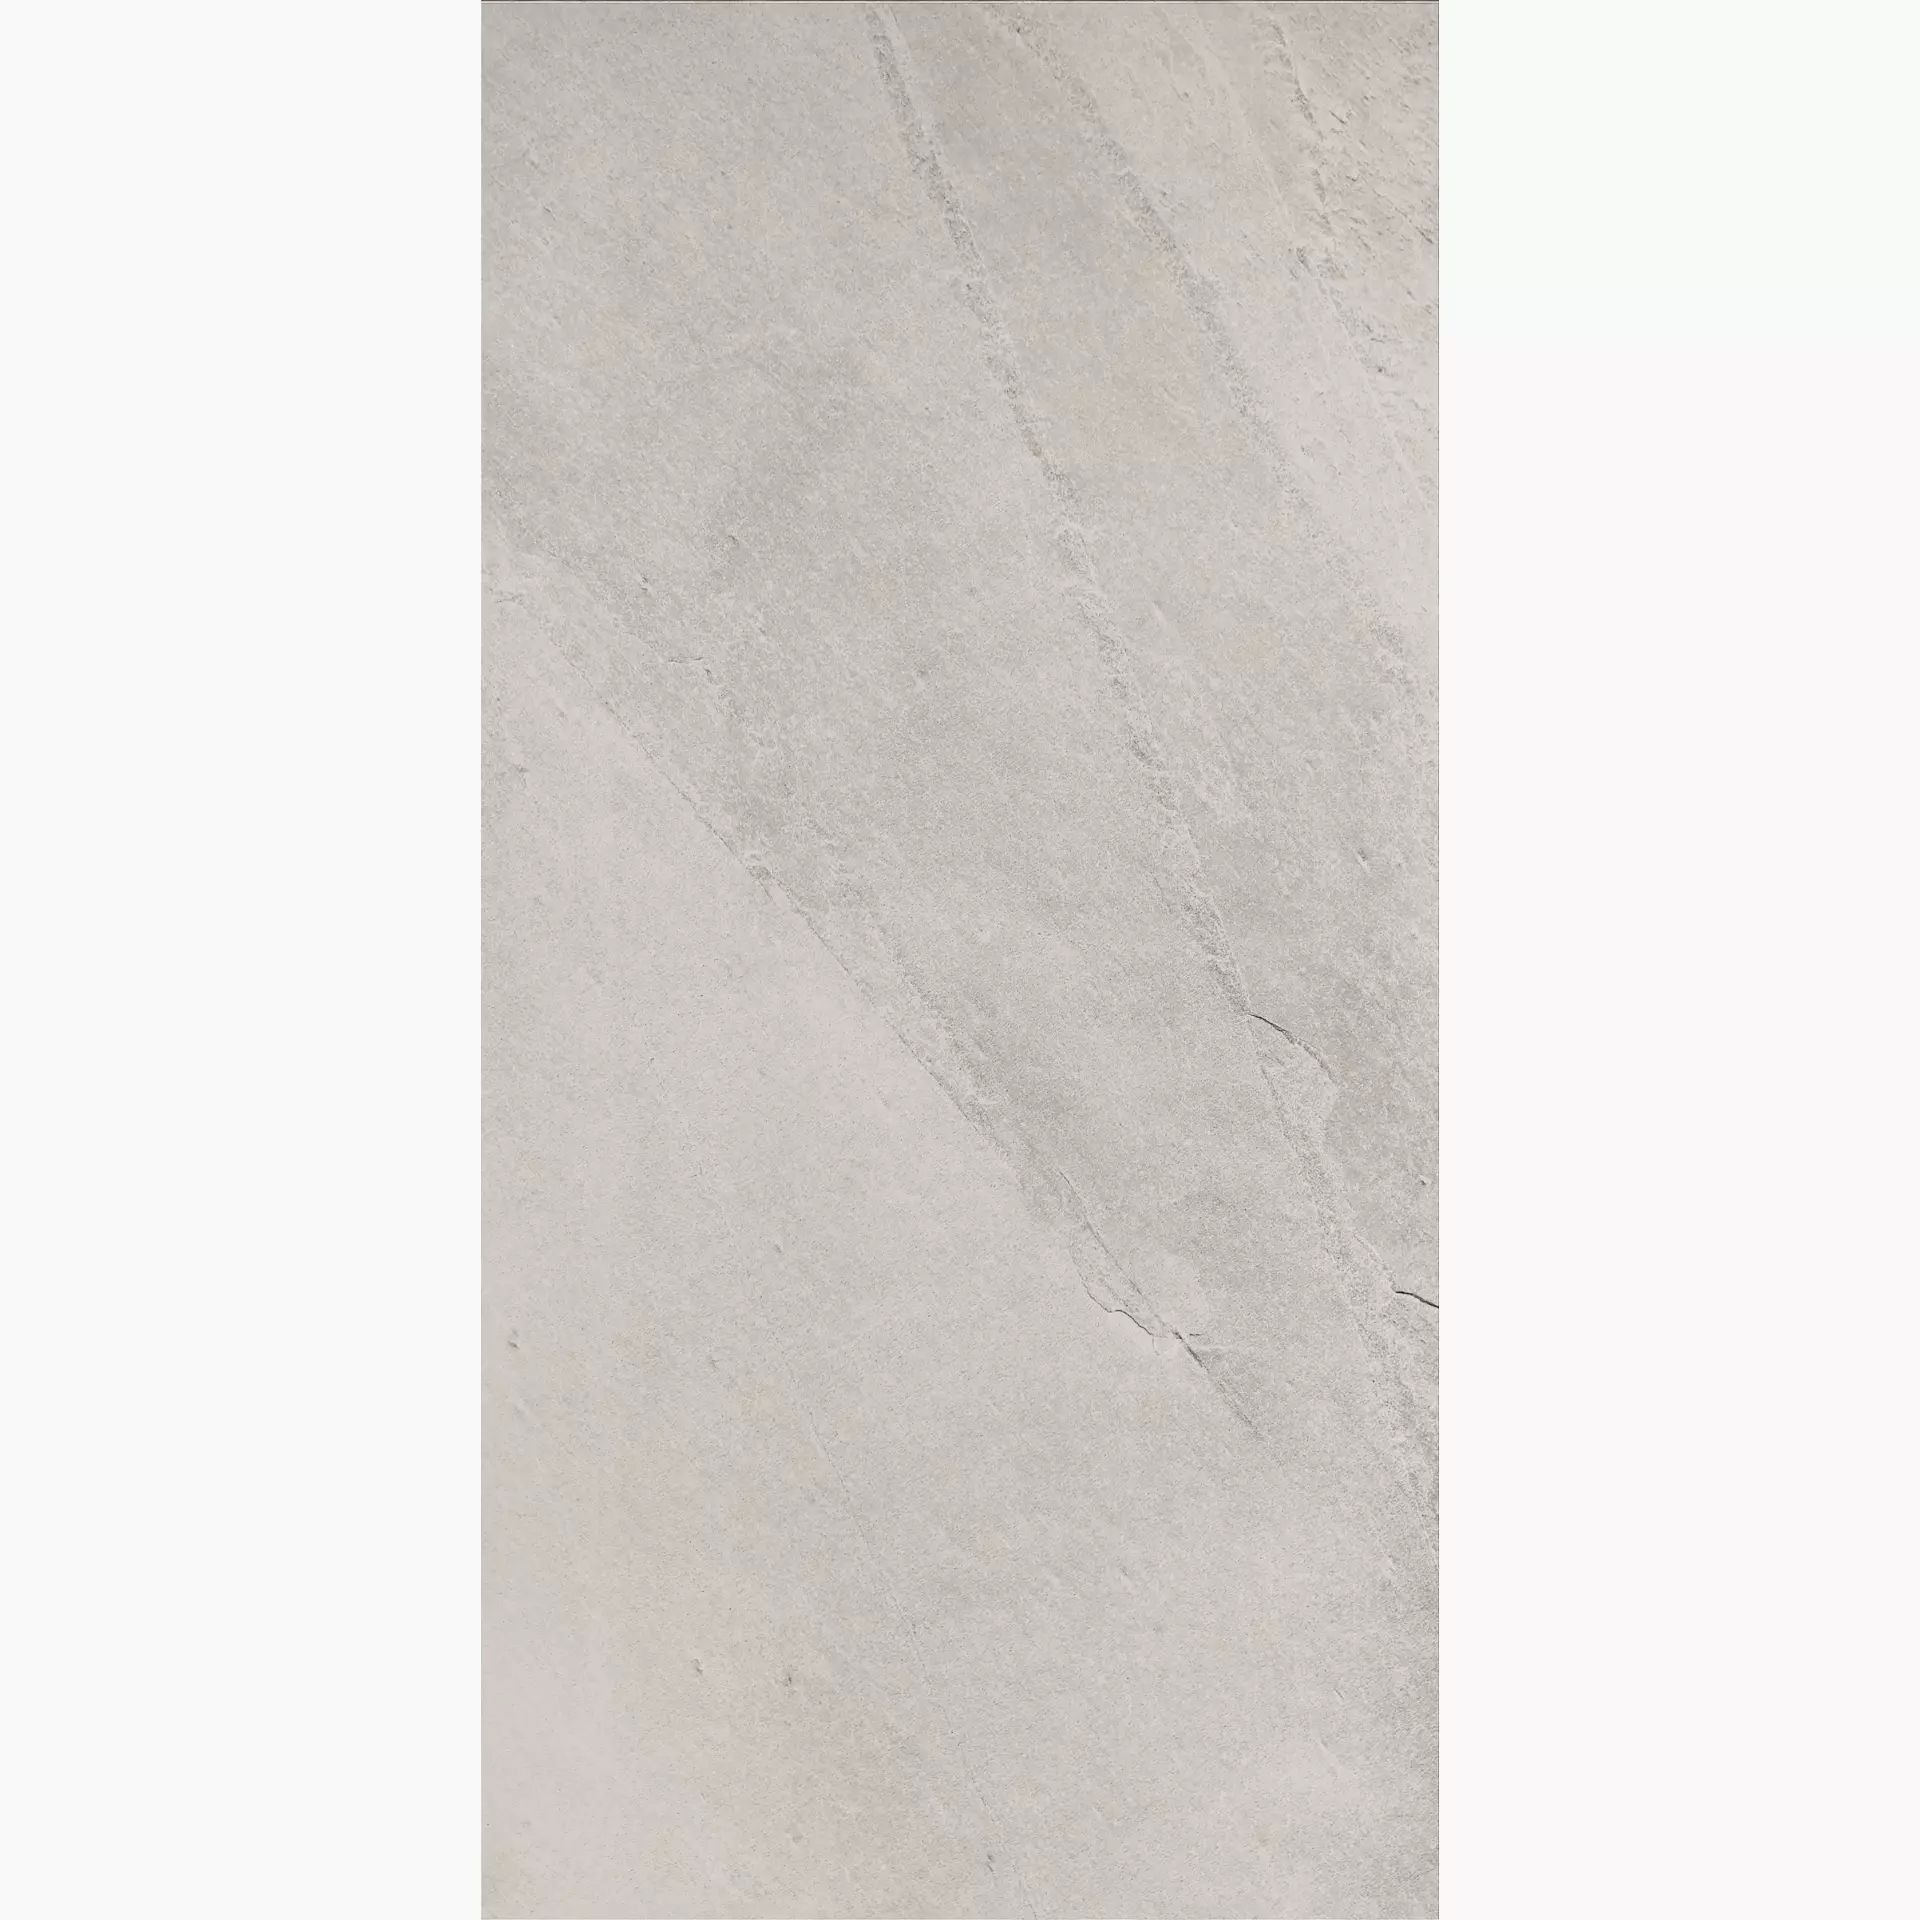 Imola X-Rock White Natural Slate Cut Matt fondi 30x60cm rectified 10mm - X-ROCK 36W